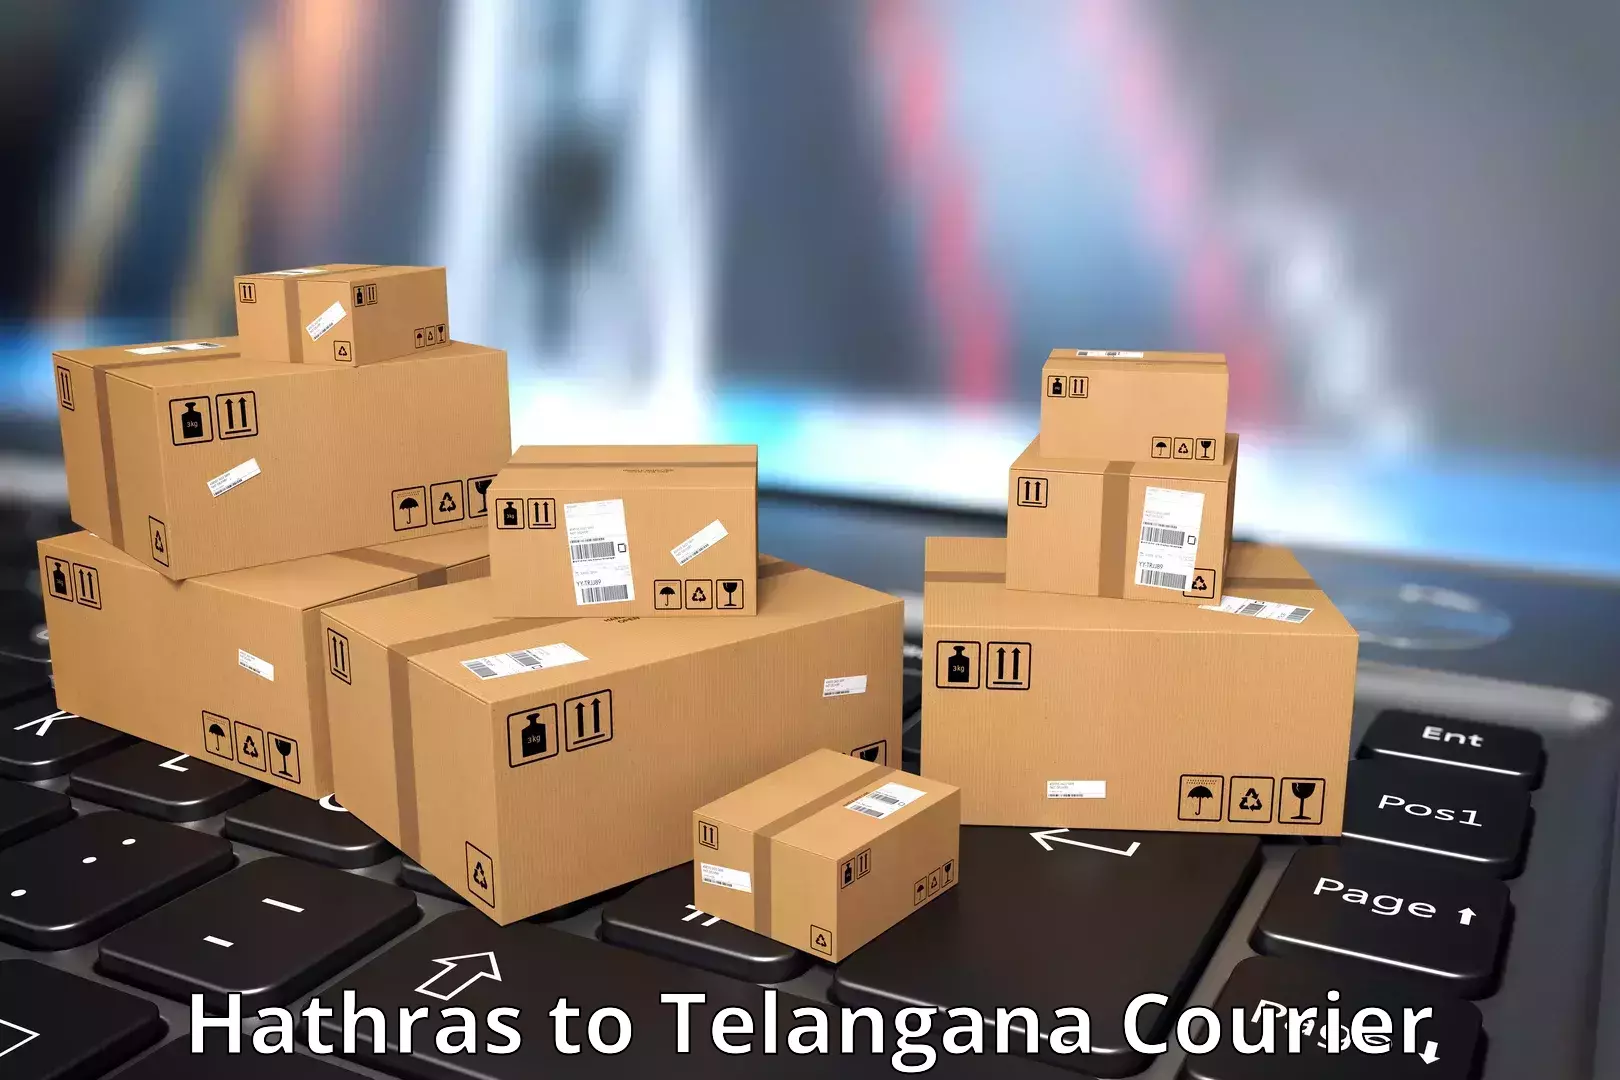 Reliable logistics providers Hathras to Peddapalli